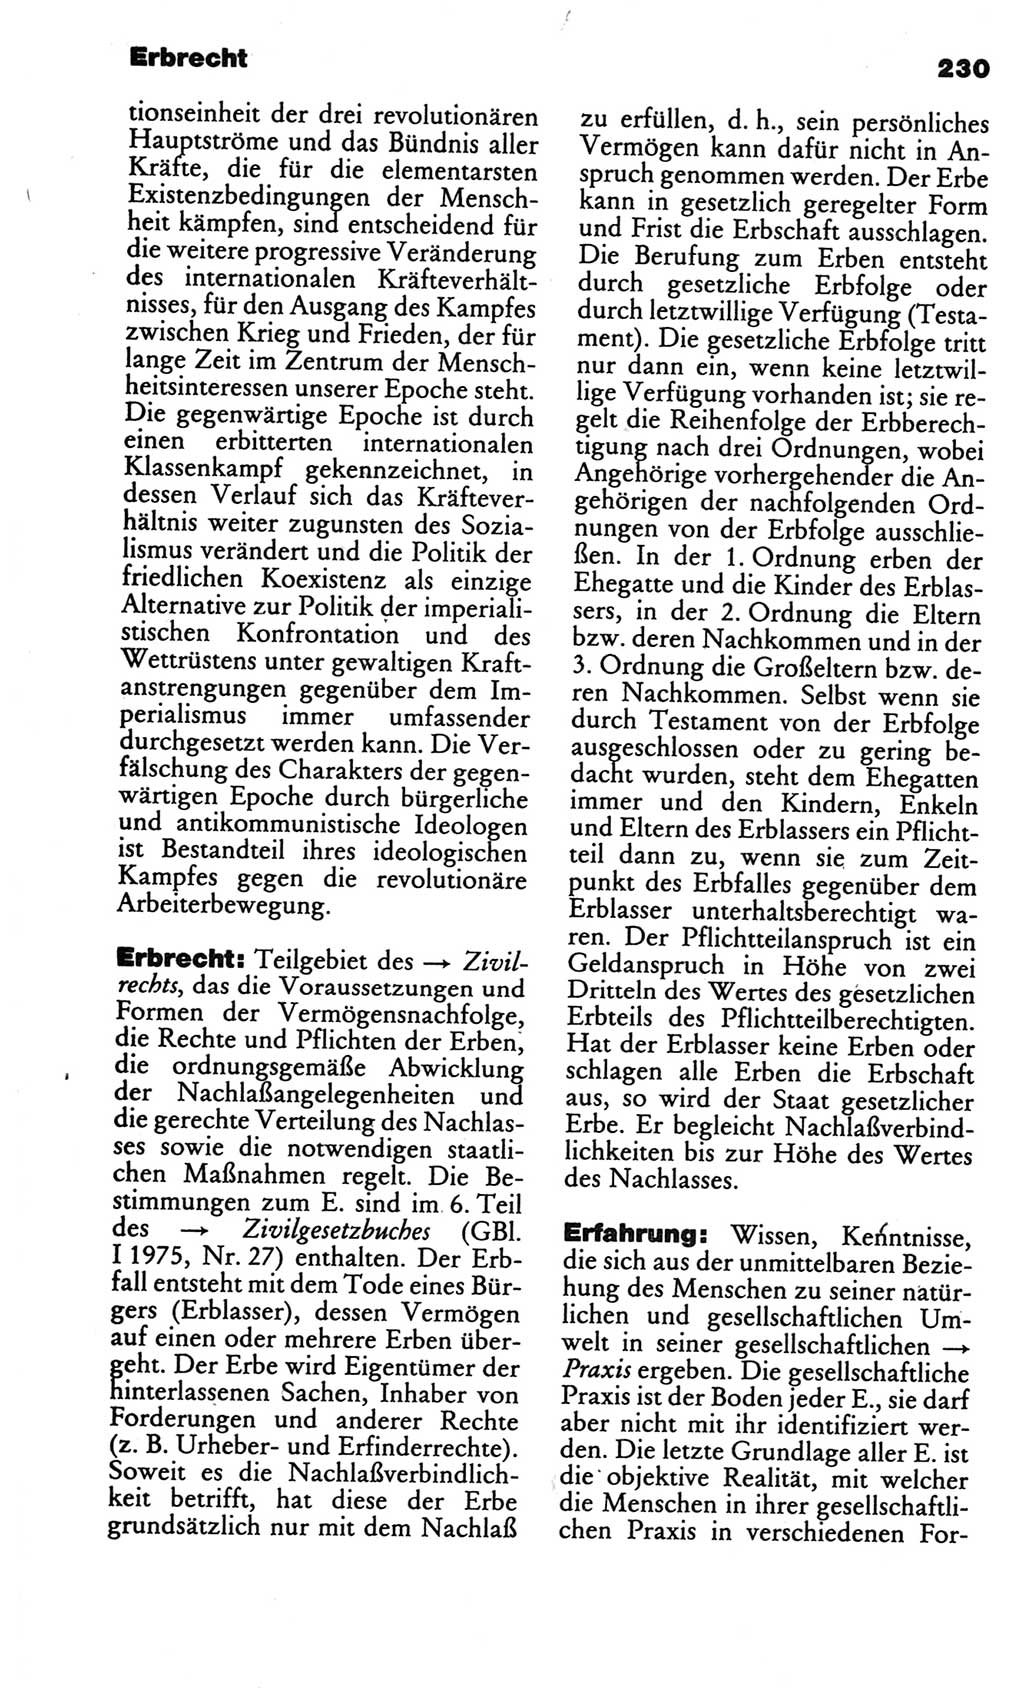 Kleines politisches Wörterbuch [Deutsche Demokratische Republik (DDR)] 1986, Seite 230 (Kl. pol. Wb. DDR 1986, S. 230)